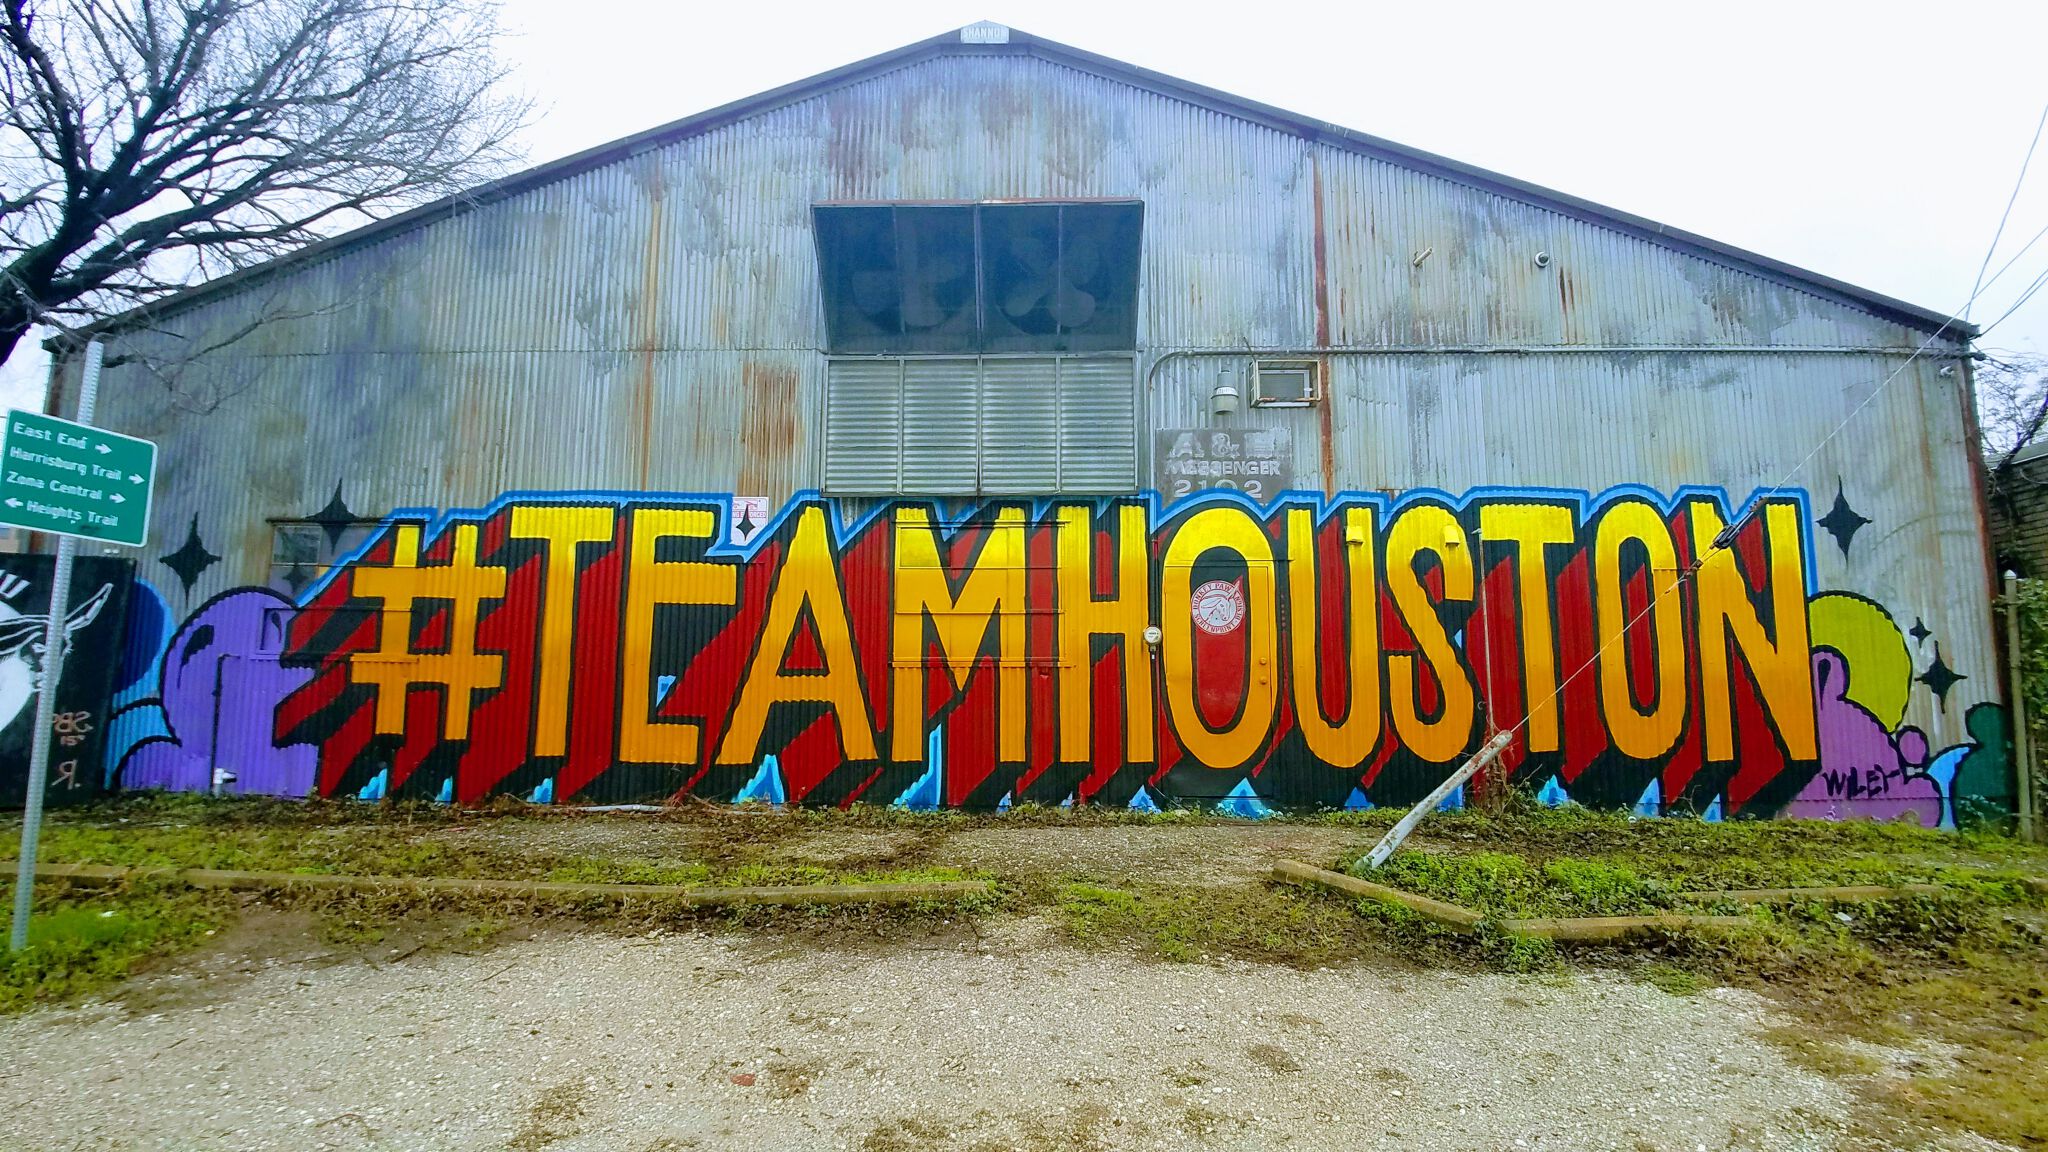 Many&mdash;Team Houston